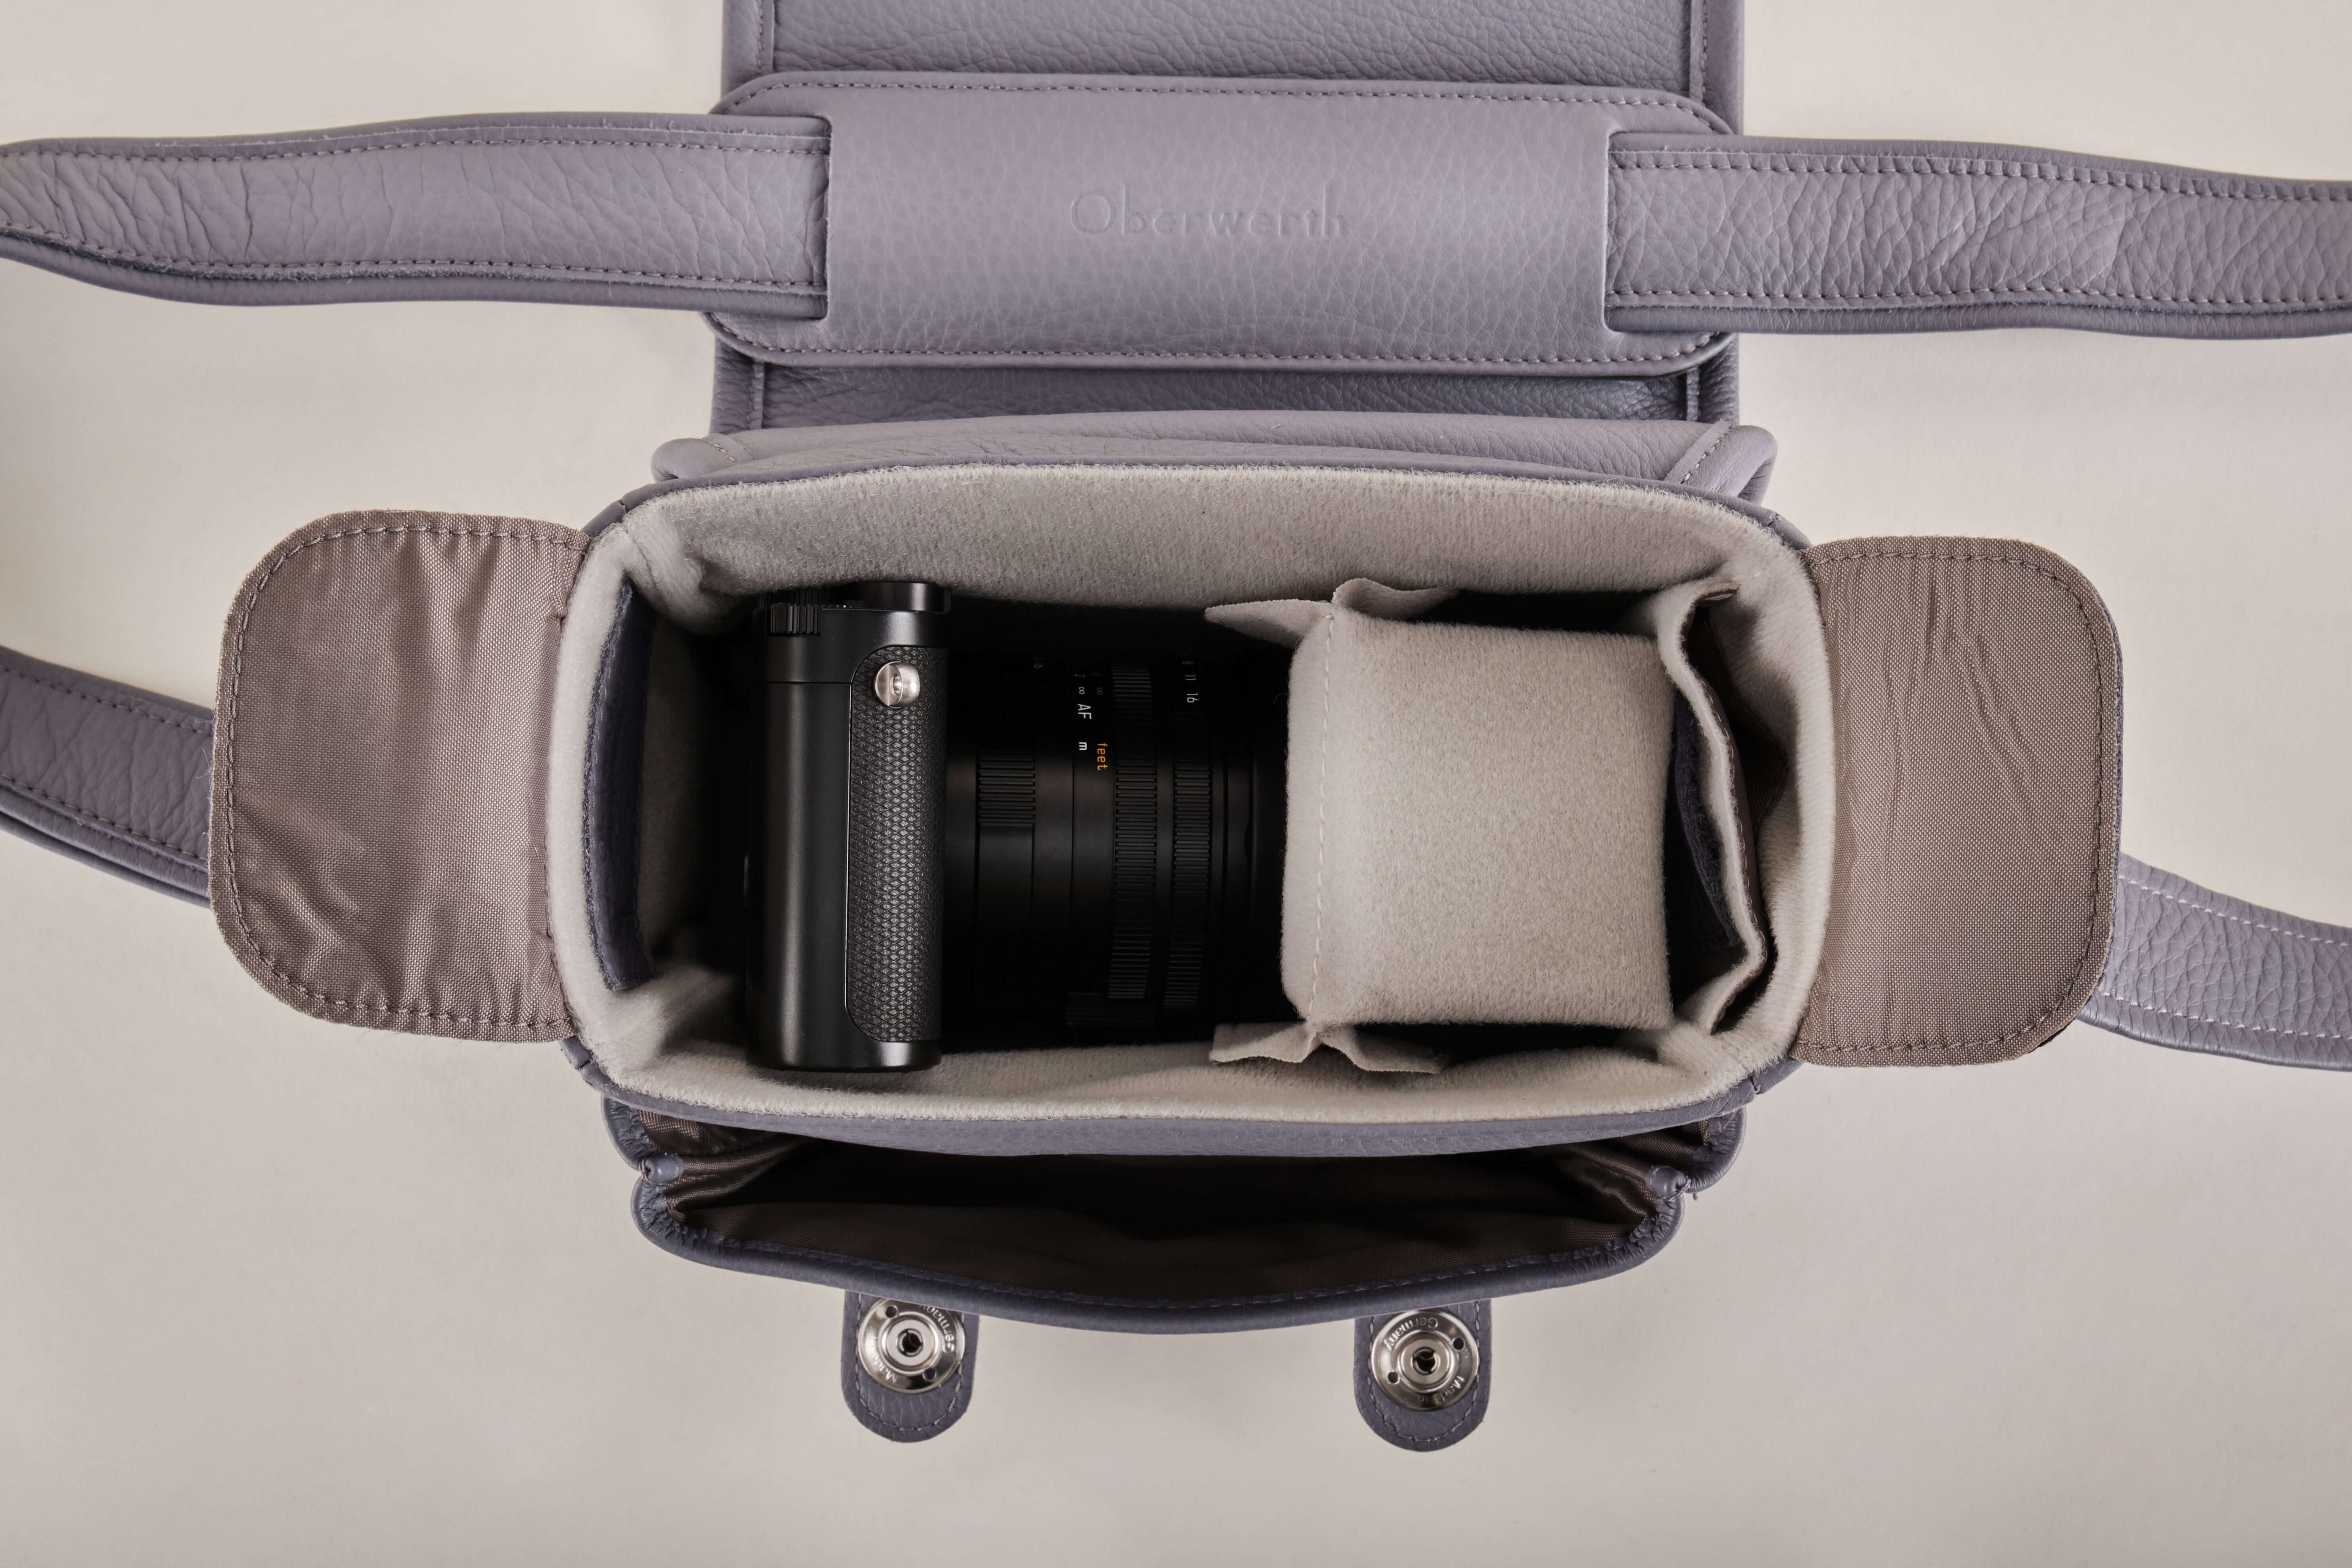 The Q Bag Casual (Phil) - Leica Q3 bag gentian !Trade Fair Goods!